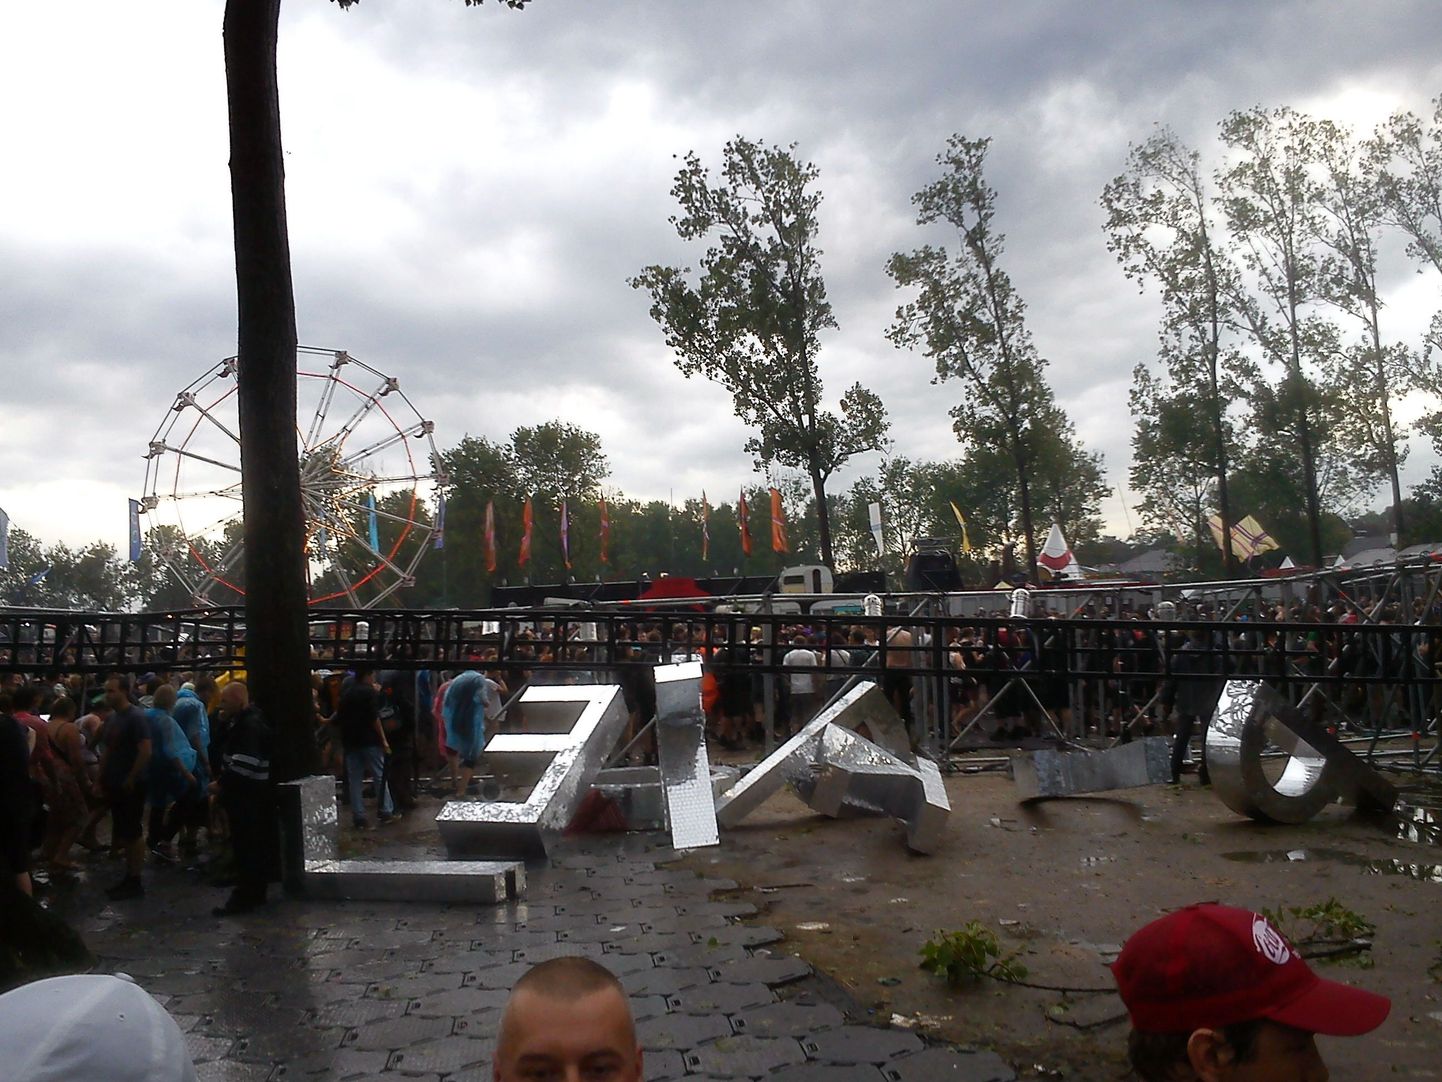 Belgias toimunud Pukkelpop festivalil varises tormi tõttu kokku kaks lava, mille tõttu sai esialgsete teadete kohaselt surma neli inimest